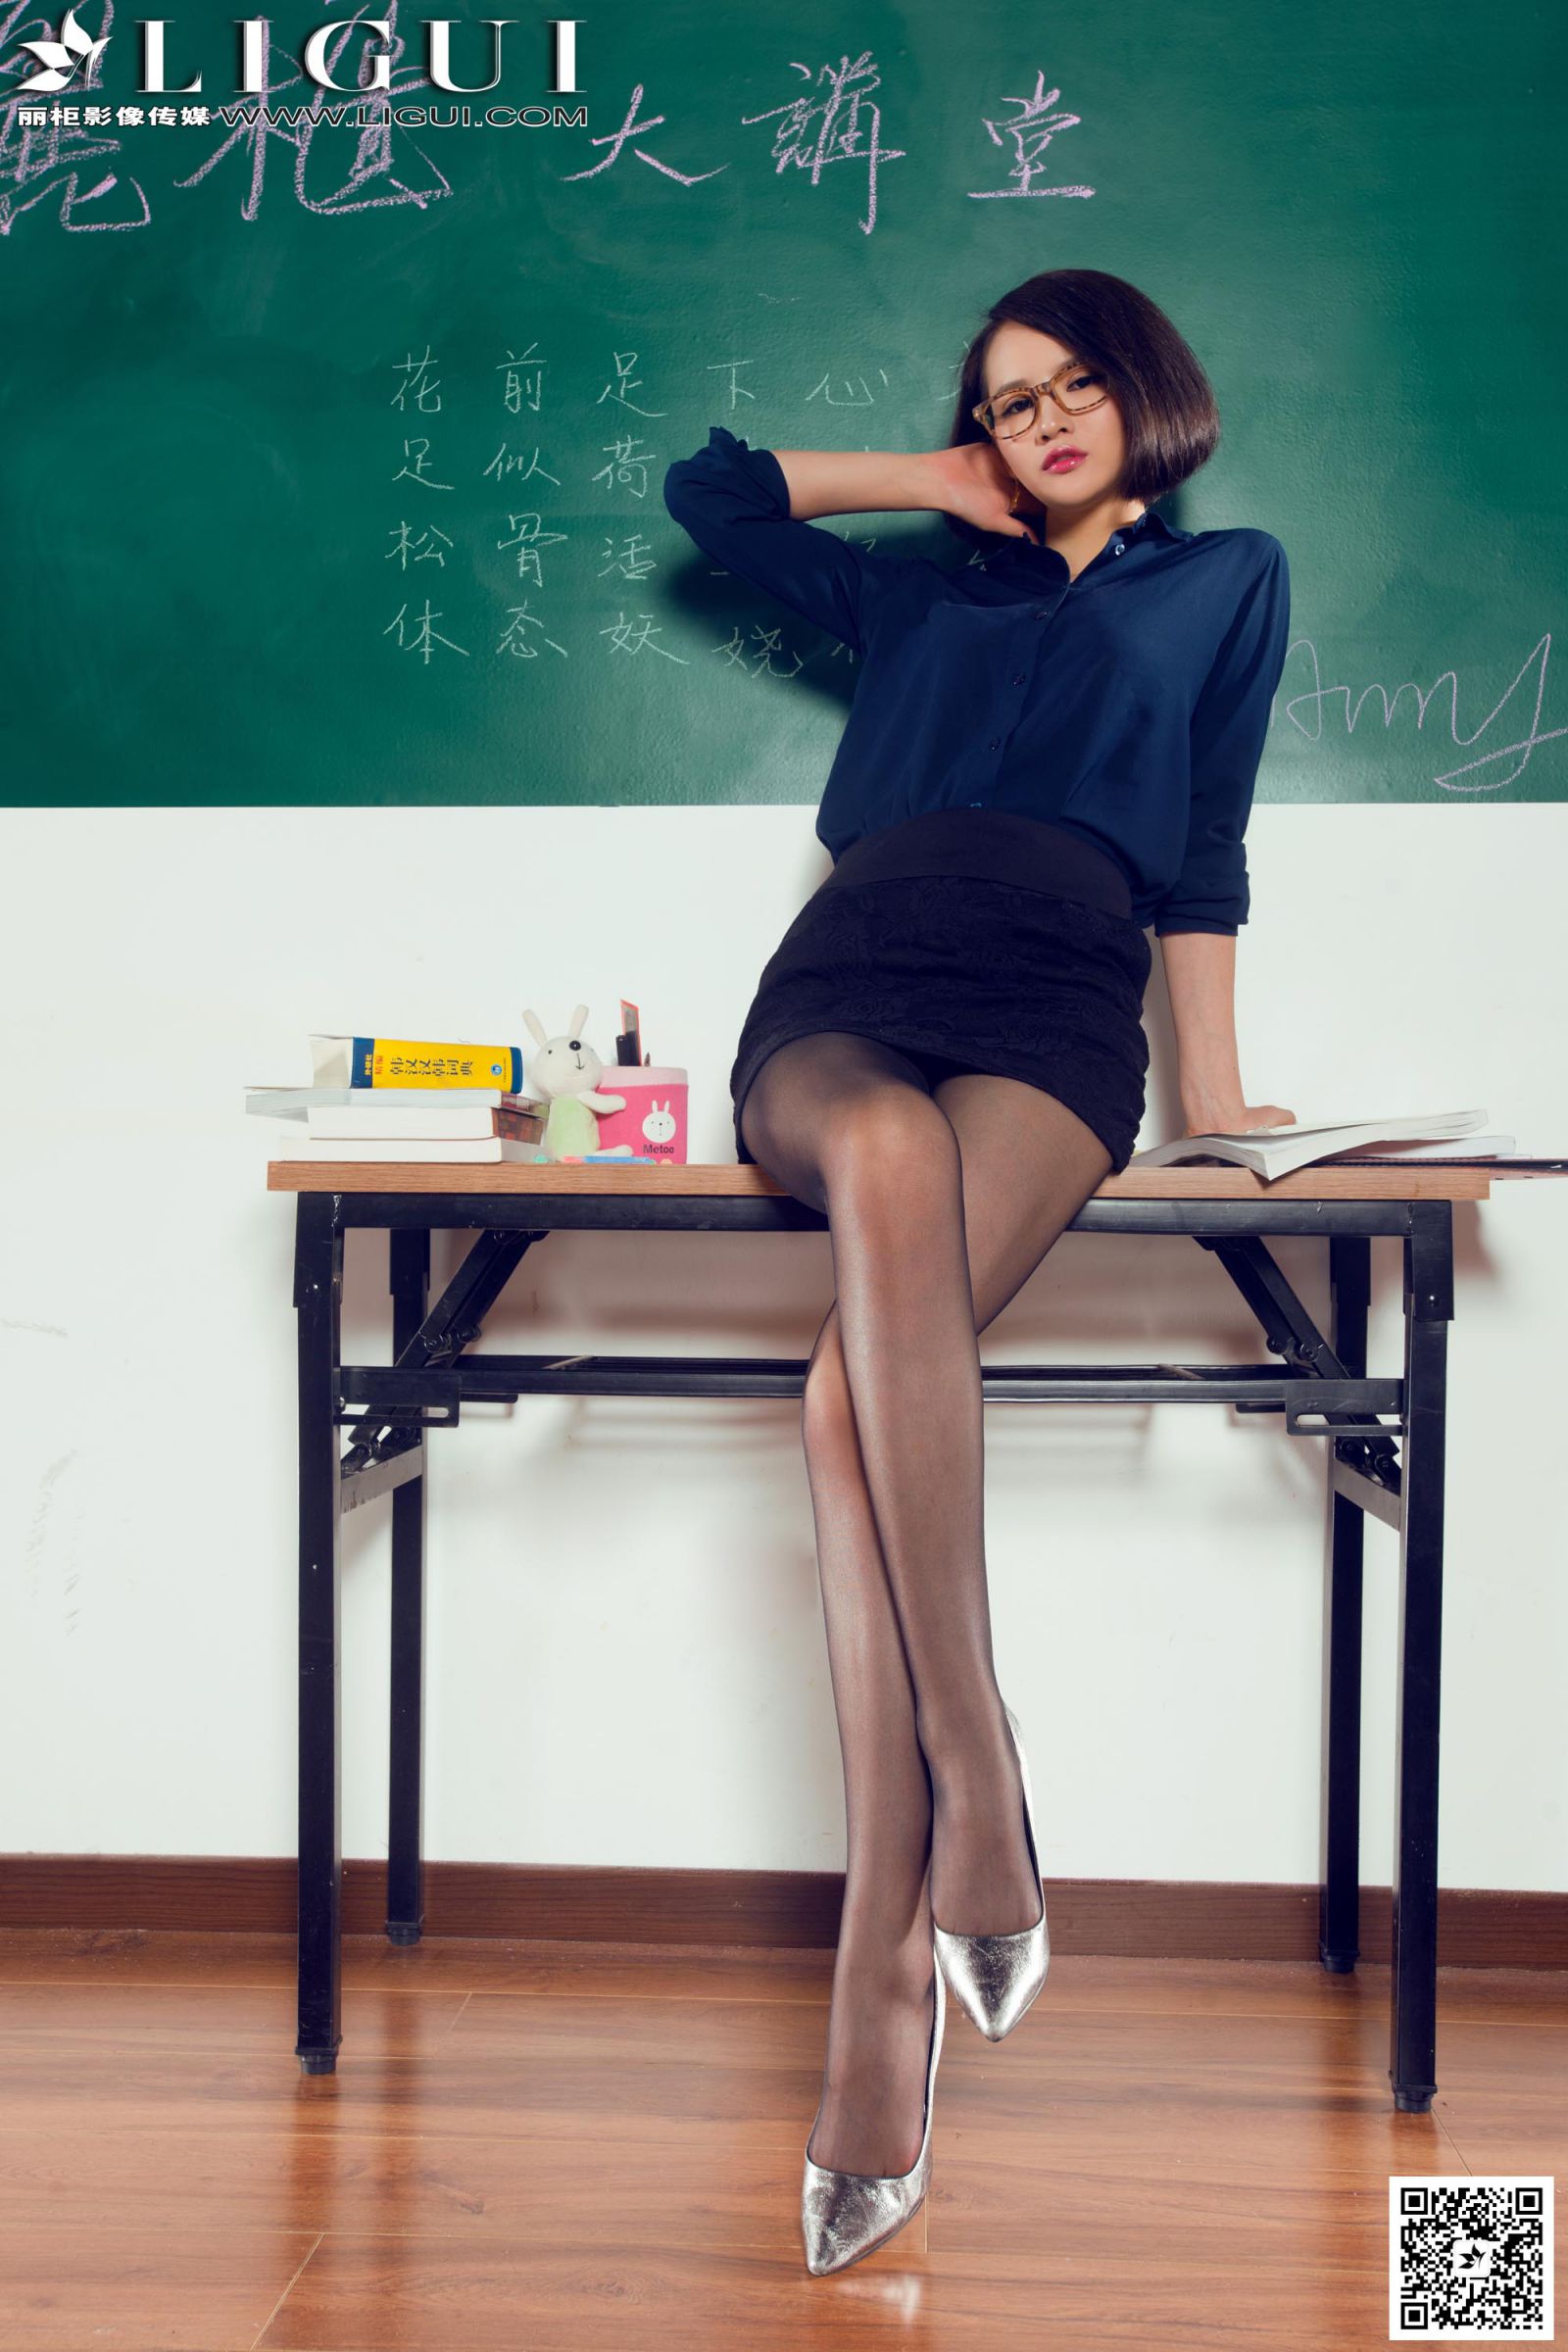 [Ligui丽柜] AMY - 教室里的黑丝女教师[59P]